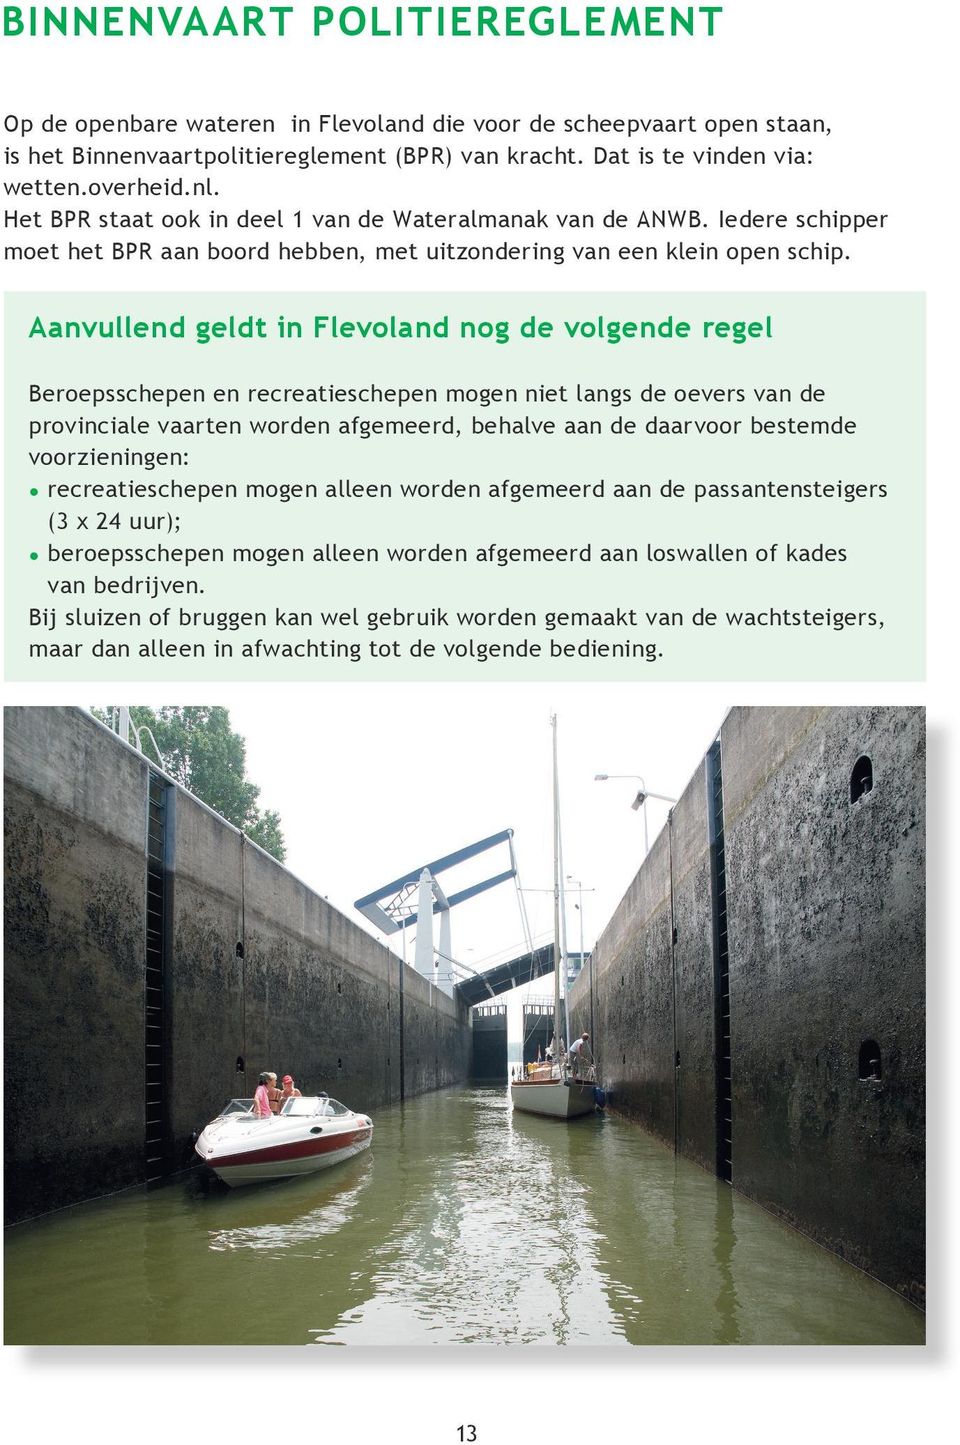 Aanvullend geldt in Flevoland nog de volgende regel Beroepsschepen en recreatieschepen mogen niet langs de oevers van de provinciale vaarten worden afgemeerd, behalve aan de daarvoor bestemde